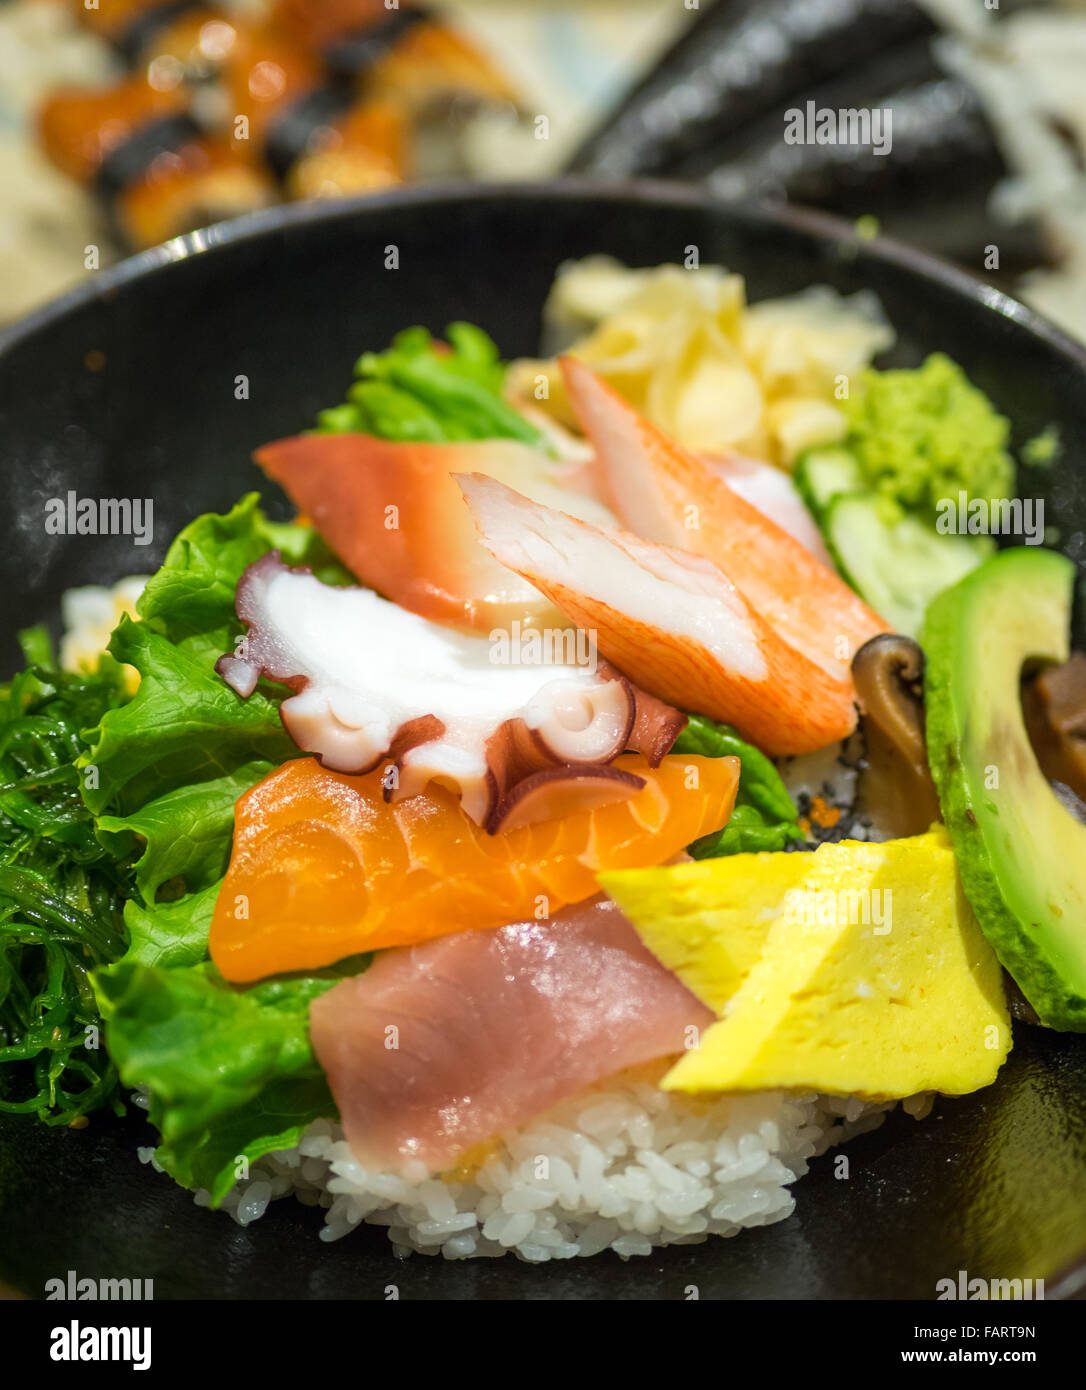 Un bol de chirashi (chirashizushi), qui se compose de riz sushi surmonté d'une variété de poisson cru et de légumes. Banque D'Images